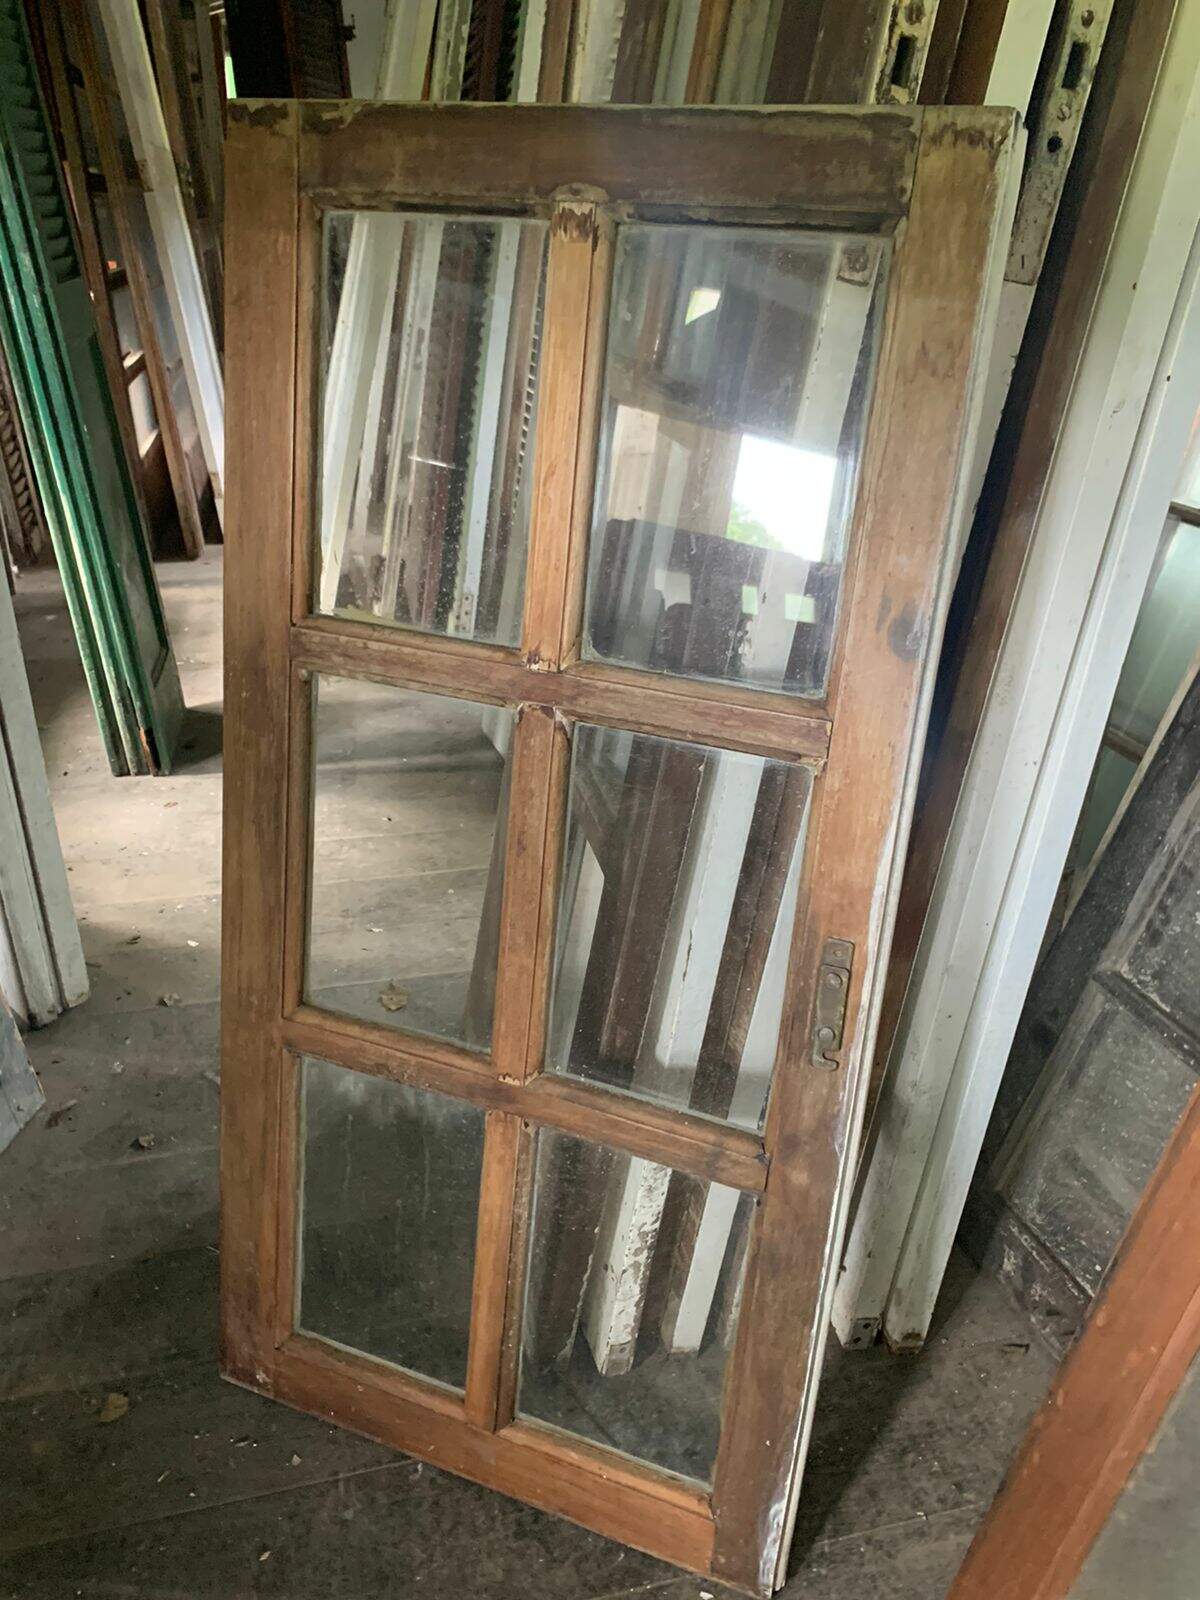 Janela de madeira com vidro - Vidraçaria Ideal